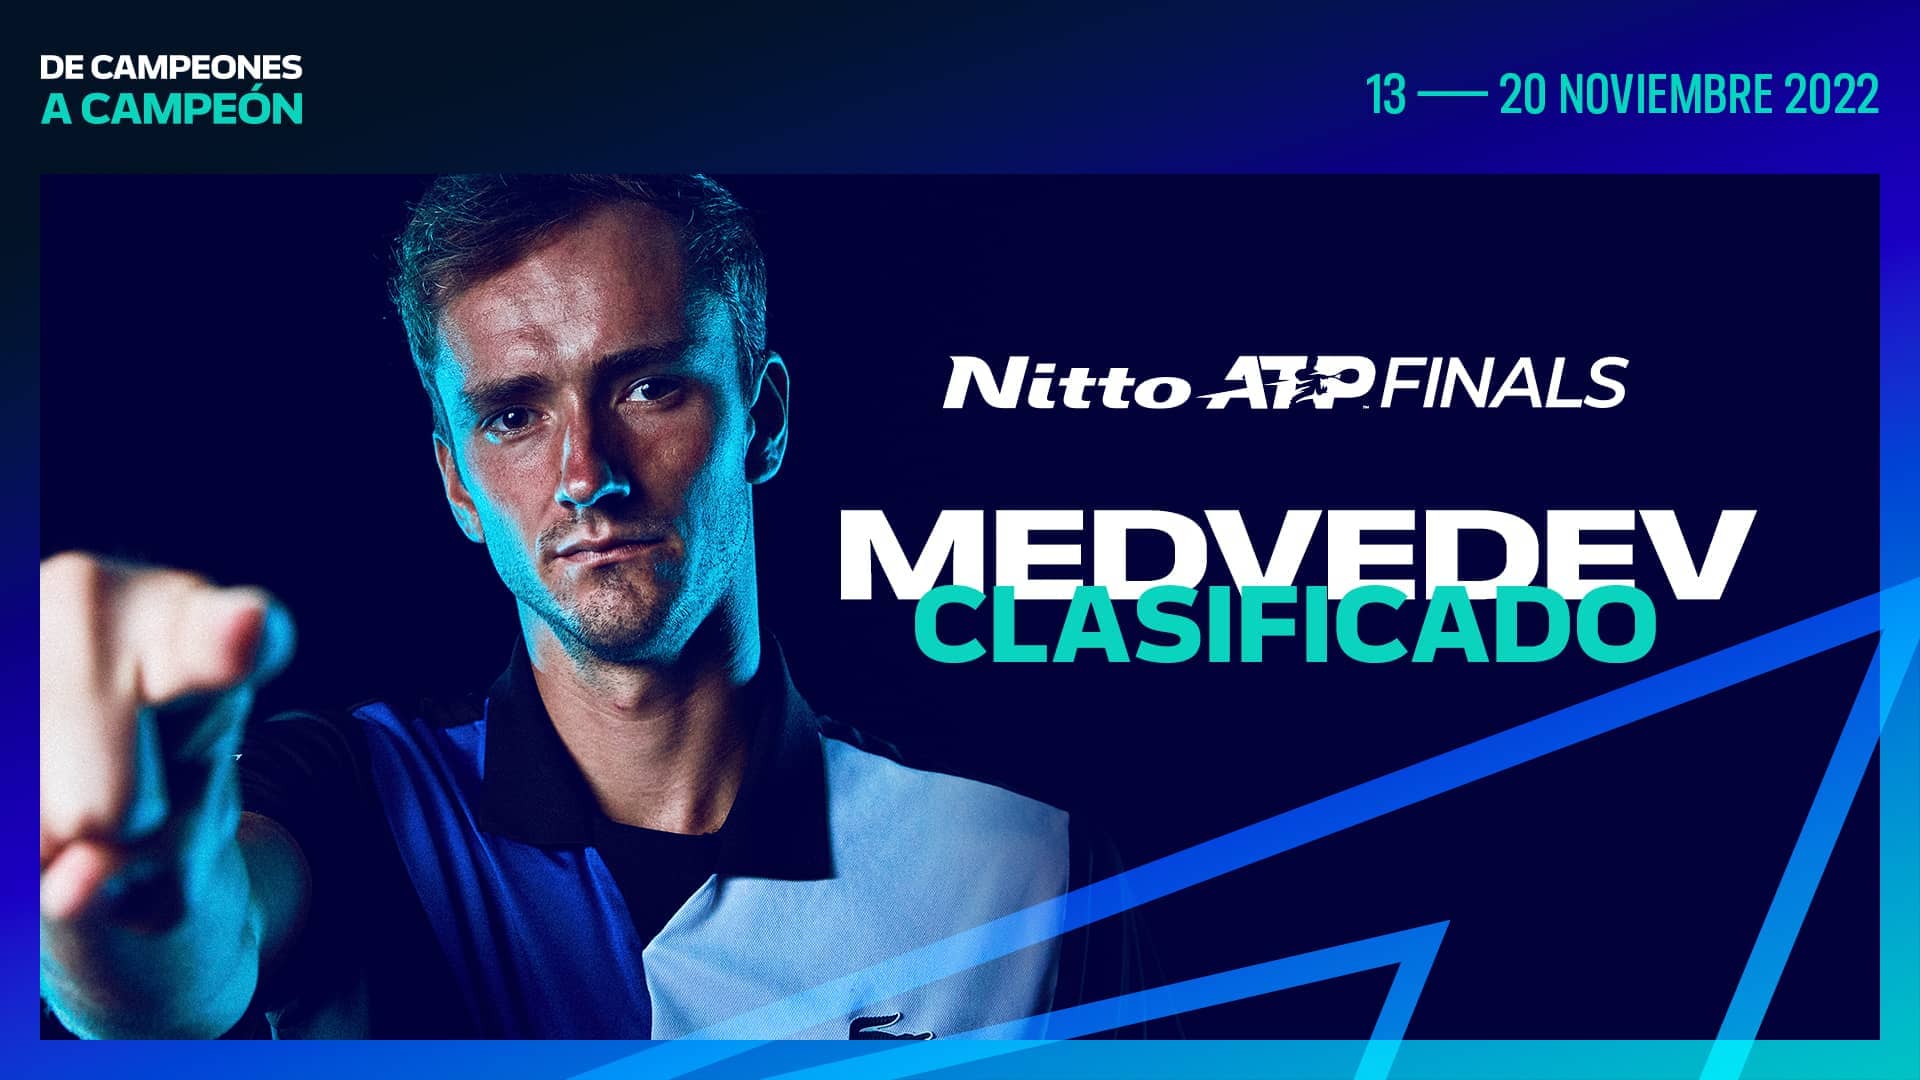 Daniil Medvedev es el sexto jugador clasificado para las Nitto ATP Finals 2022.